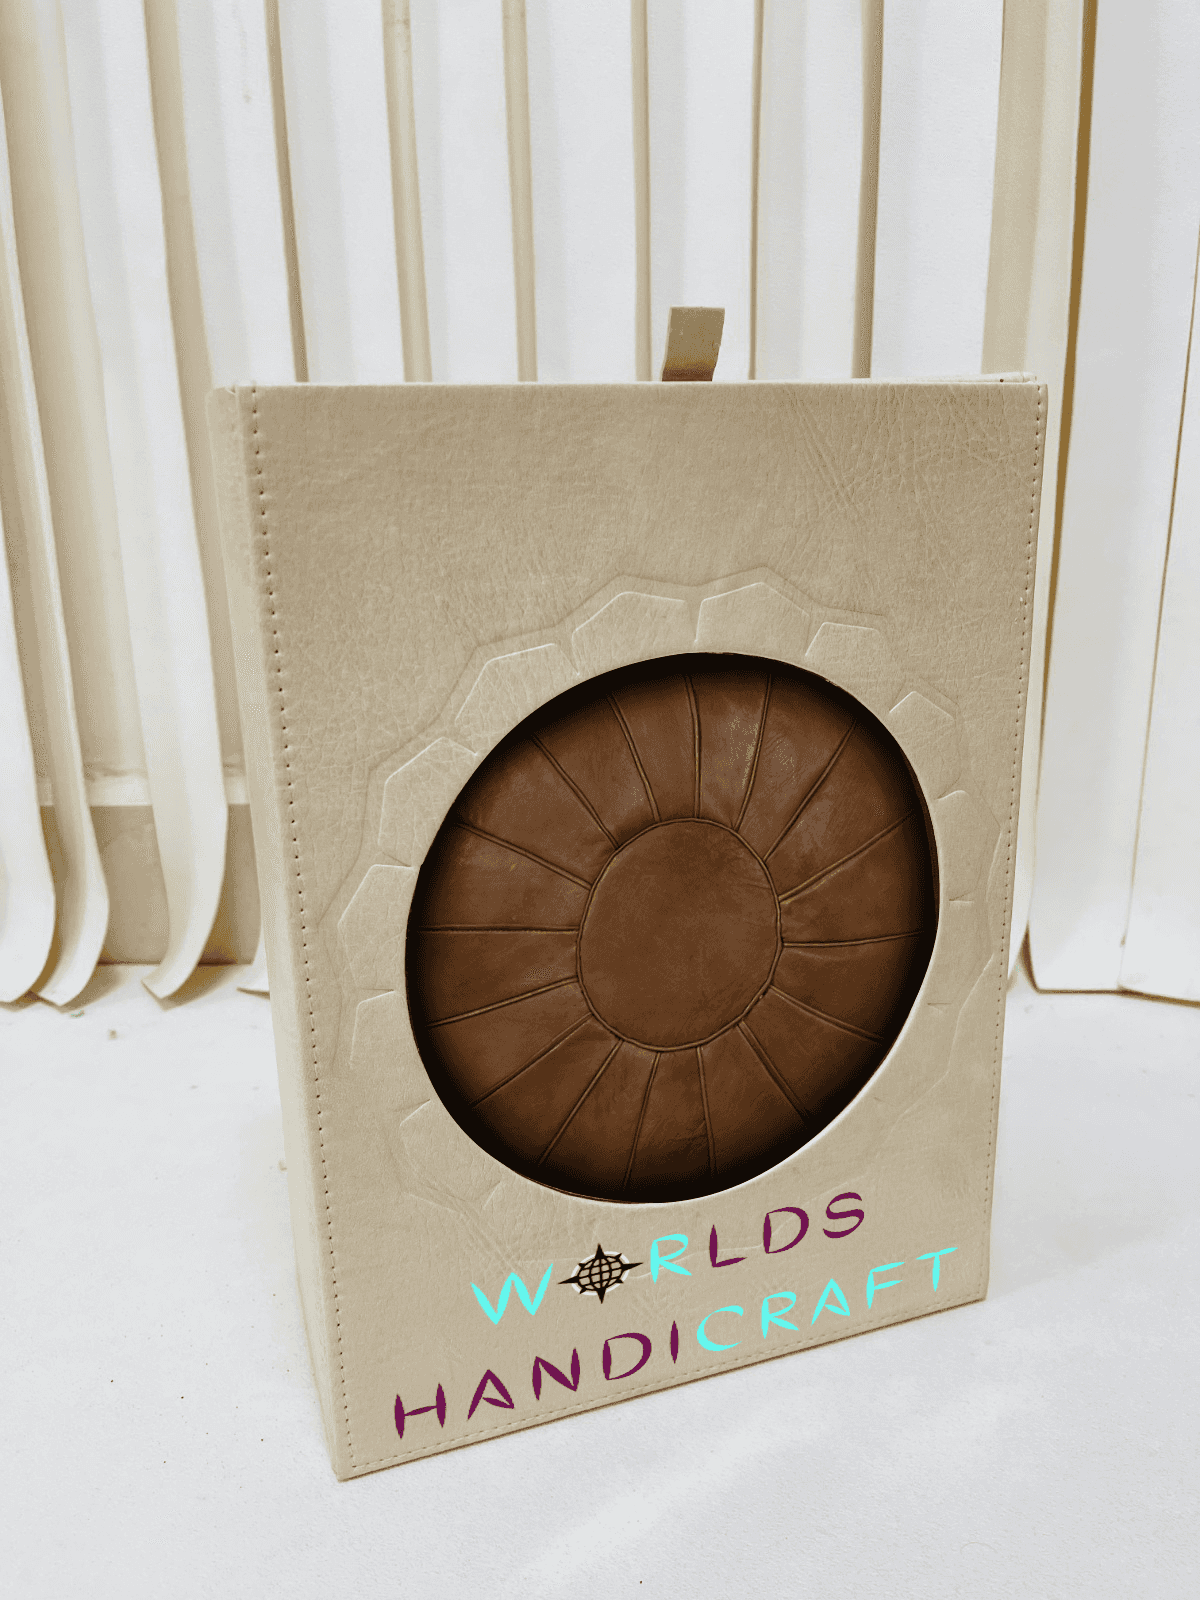 A9 | Tan Brown Moroccan Leather Pouf